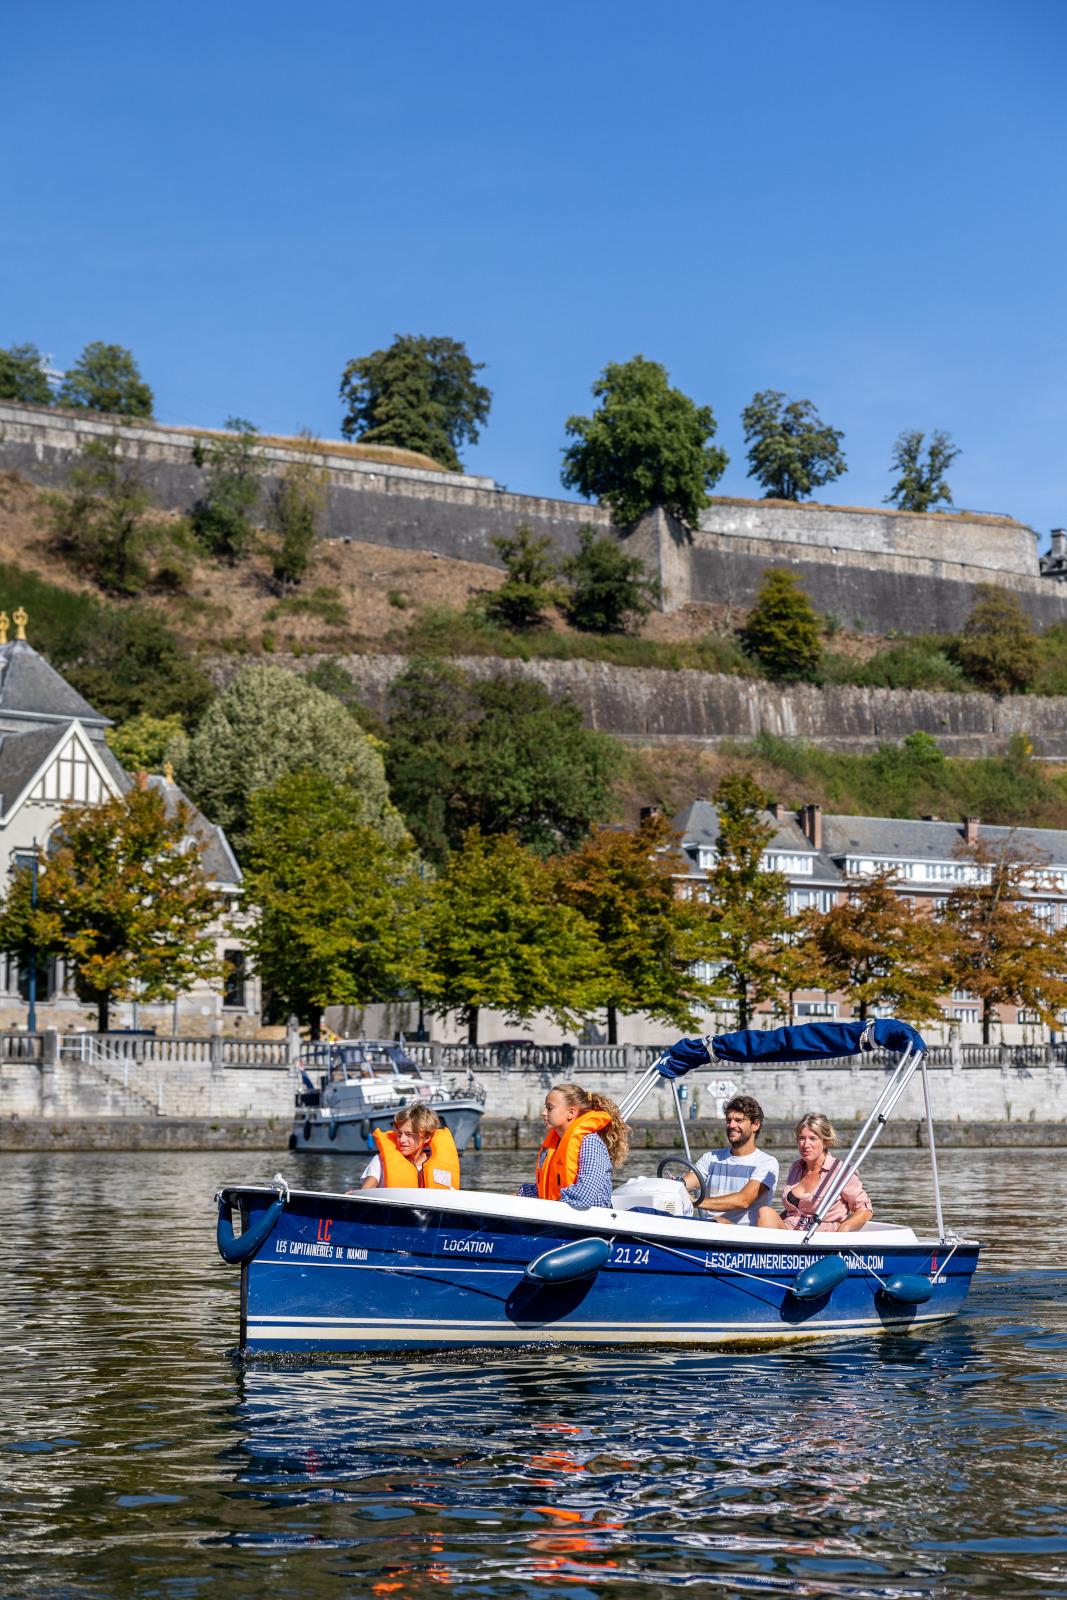 Family cruising on the Meuse river in Namur